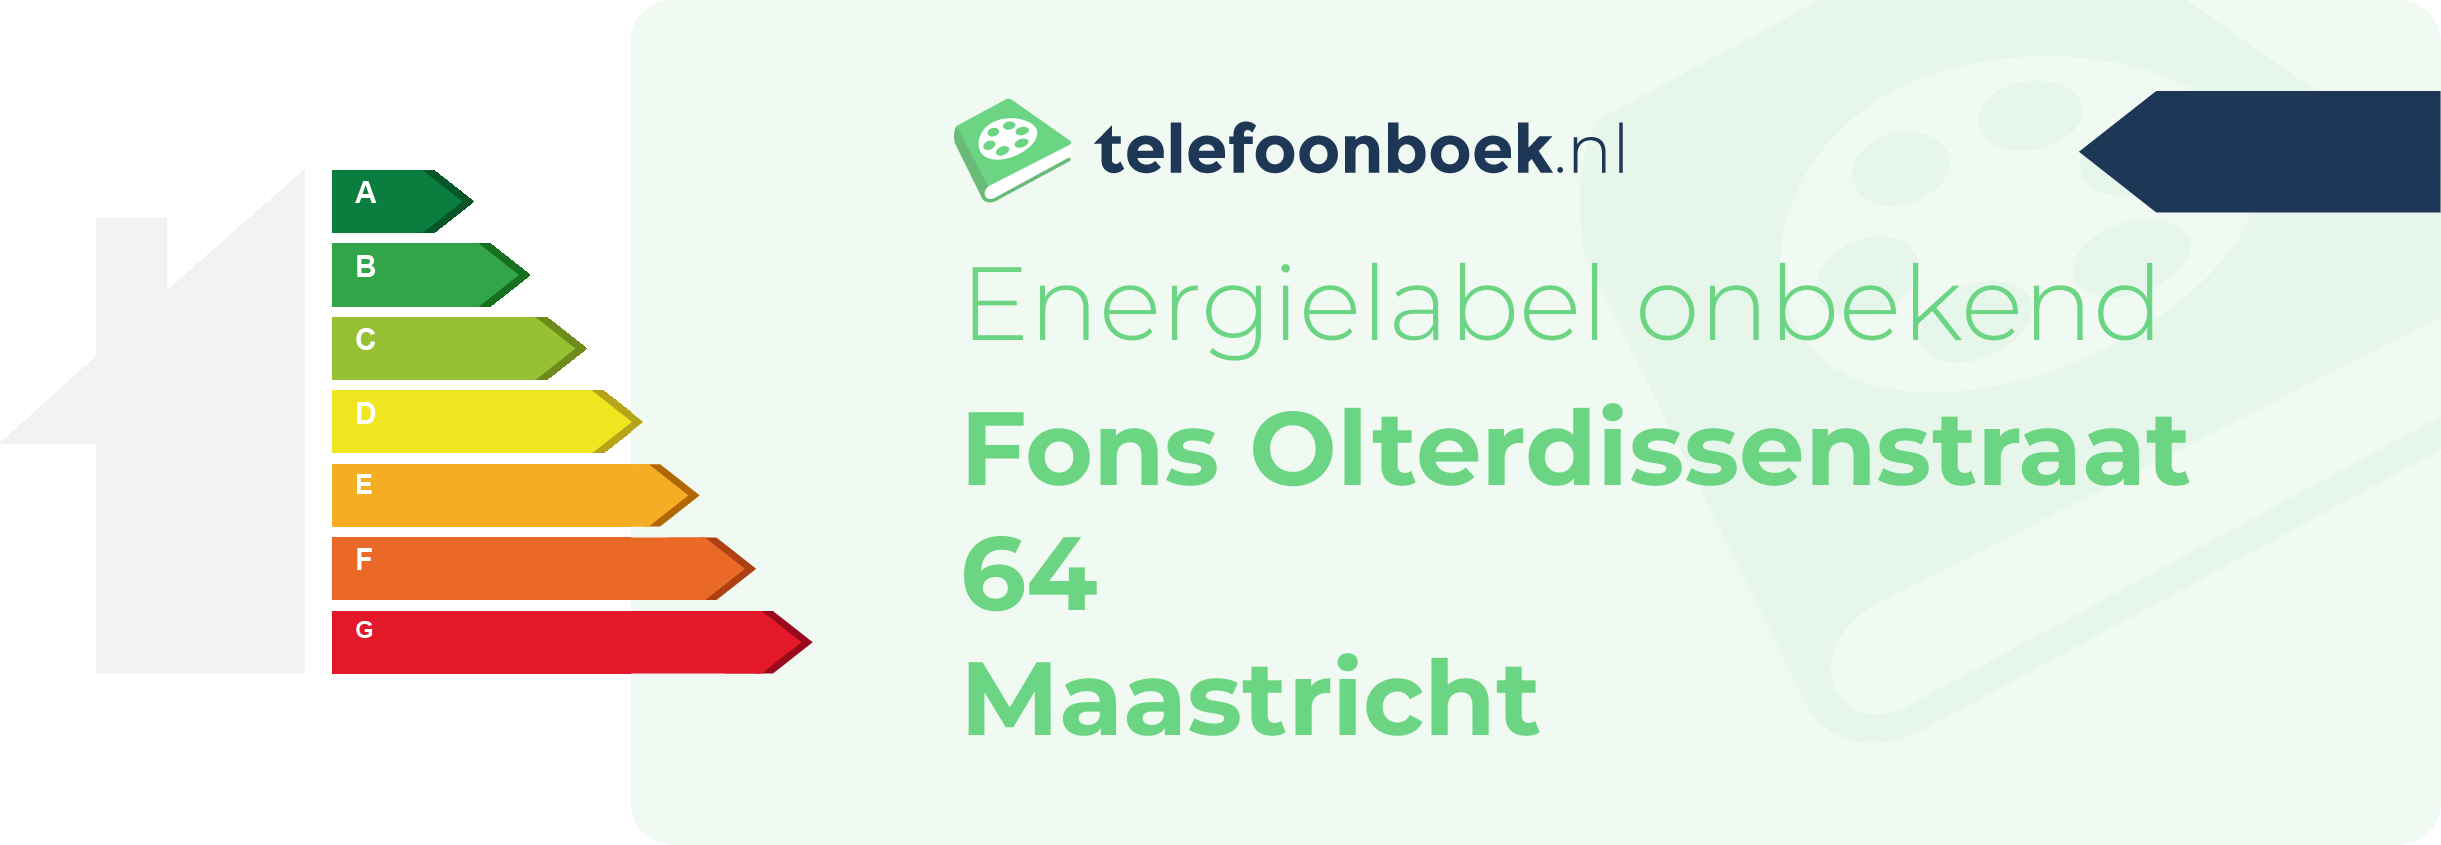 Energielabel Fons Olterdissenstraat 64 Maastricht